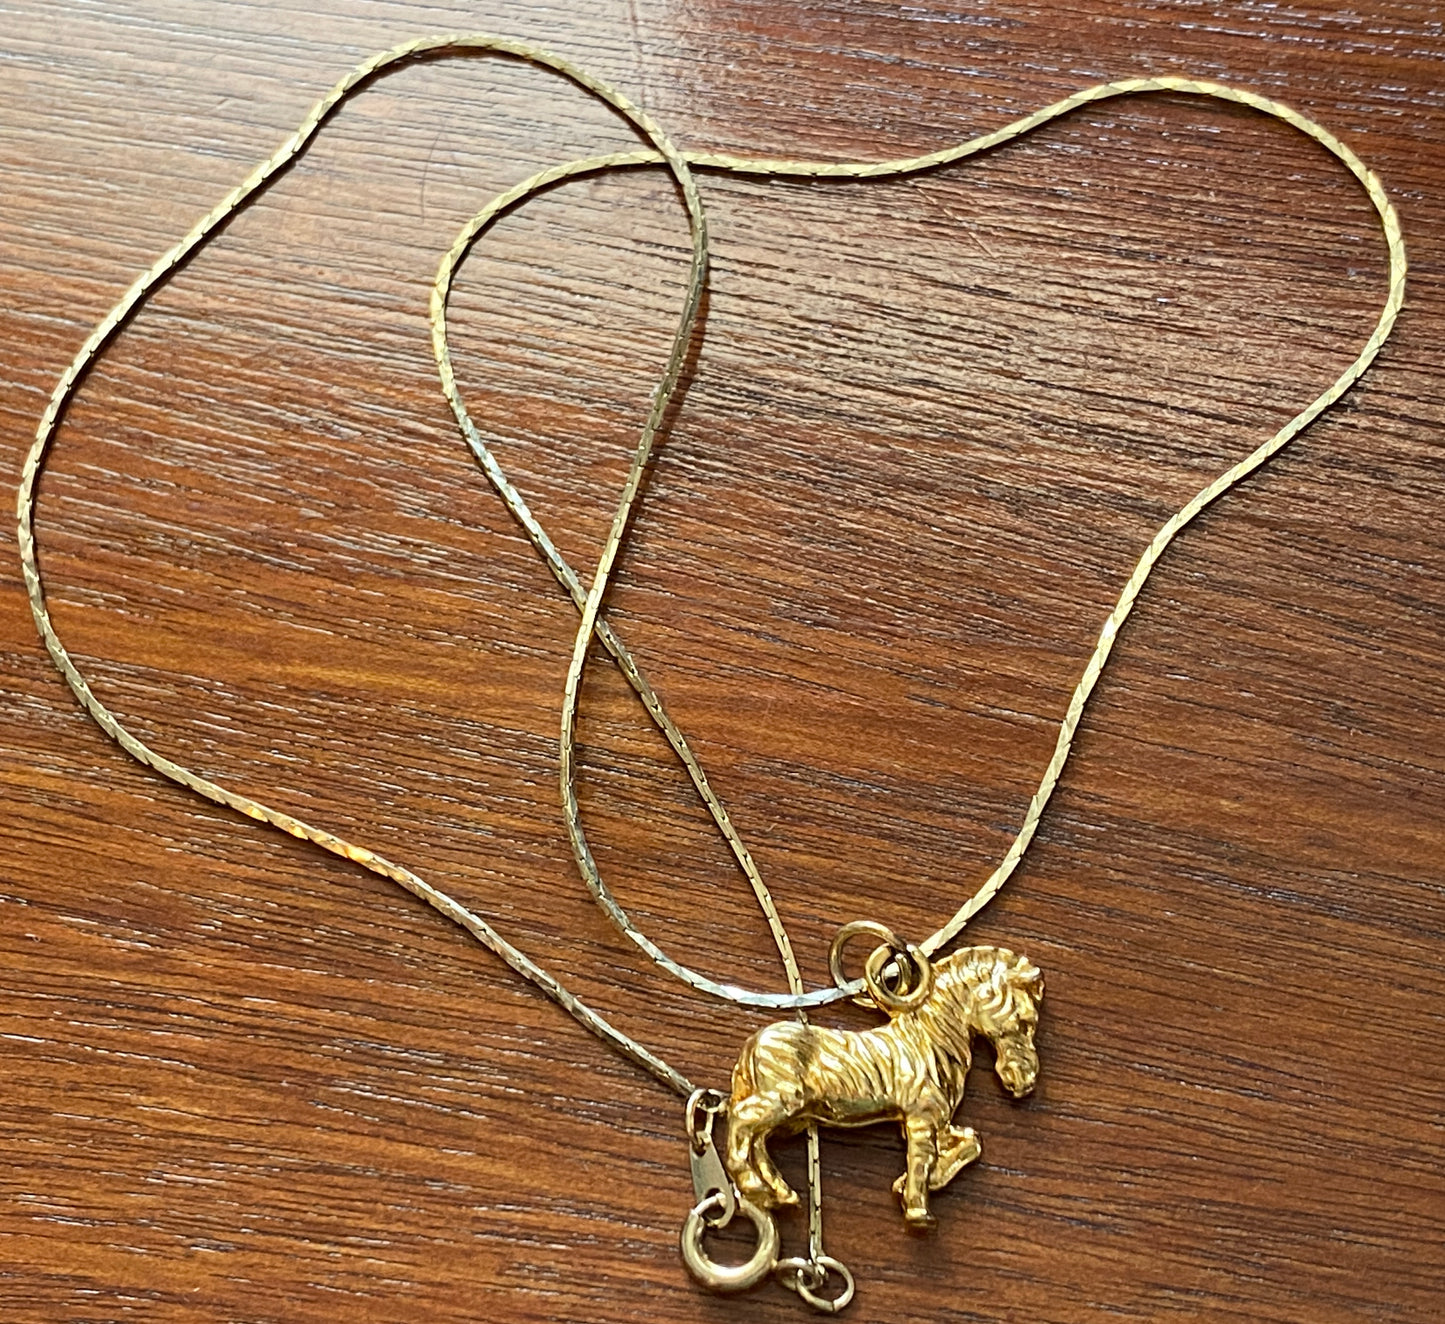 Vintage Gold Tone Metal Chain Necklace Zebra Pendant